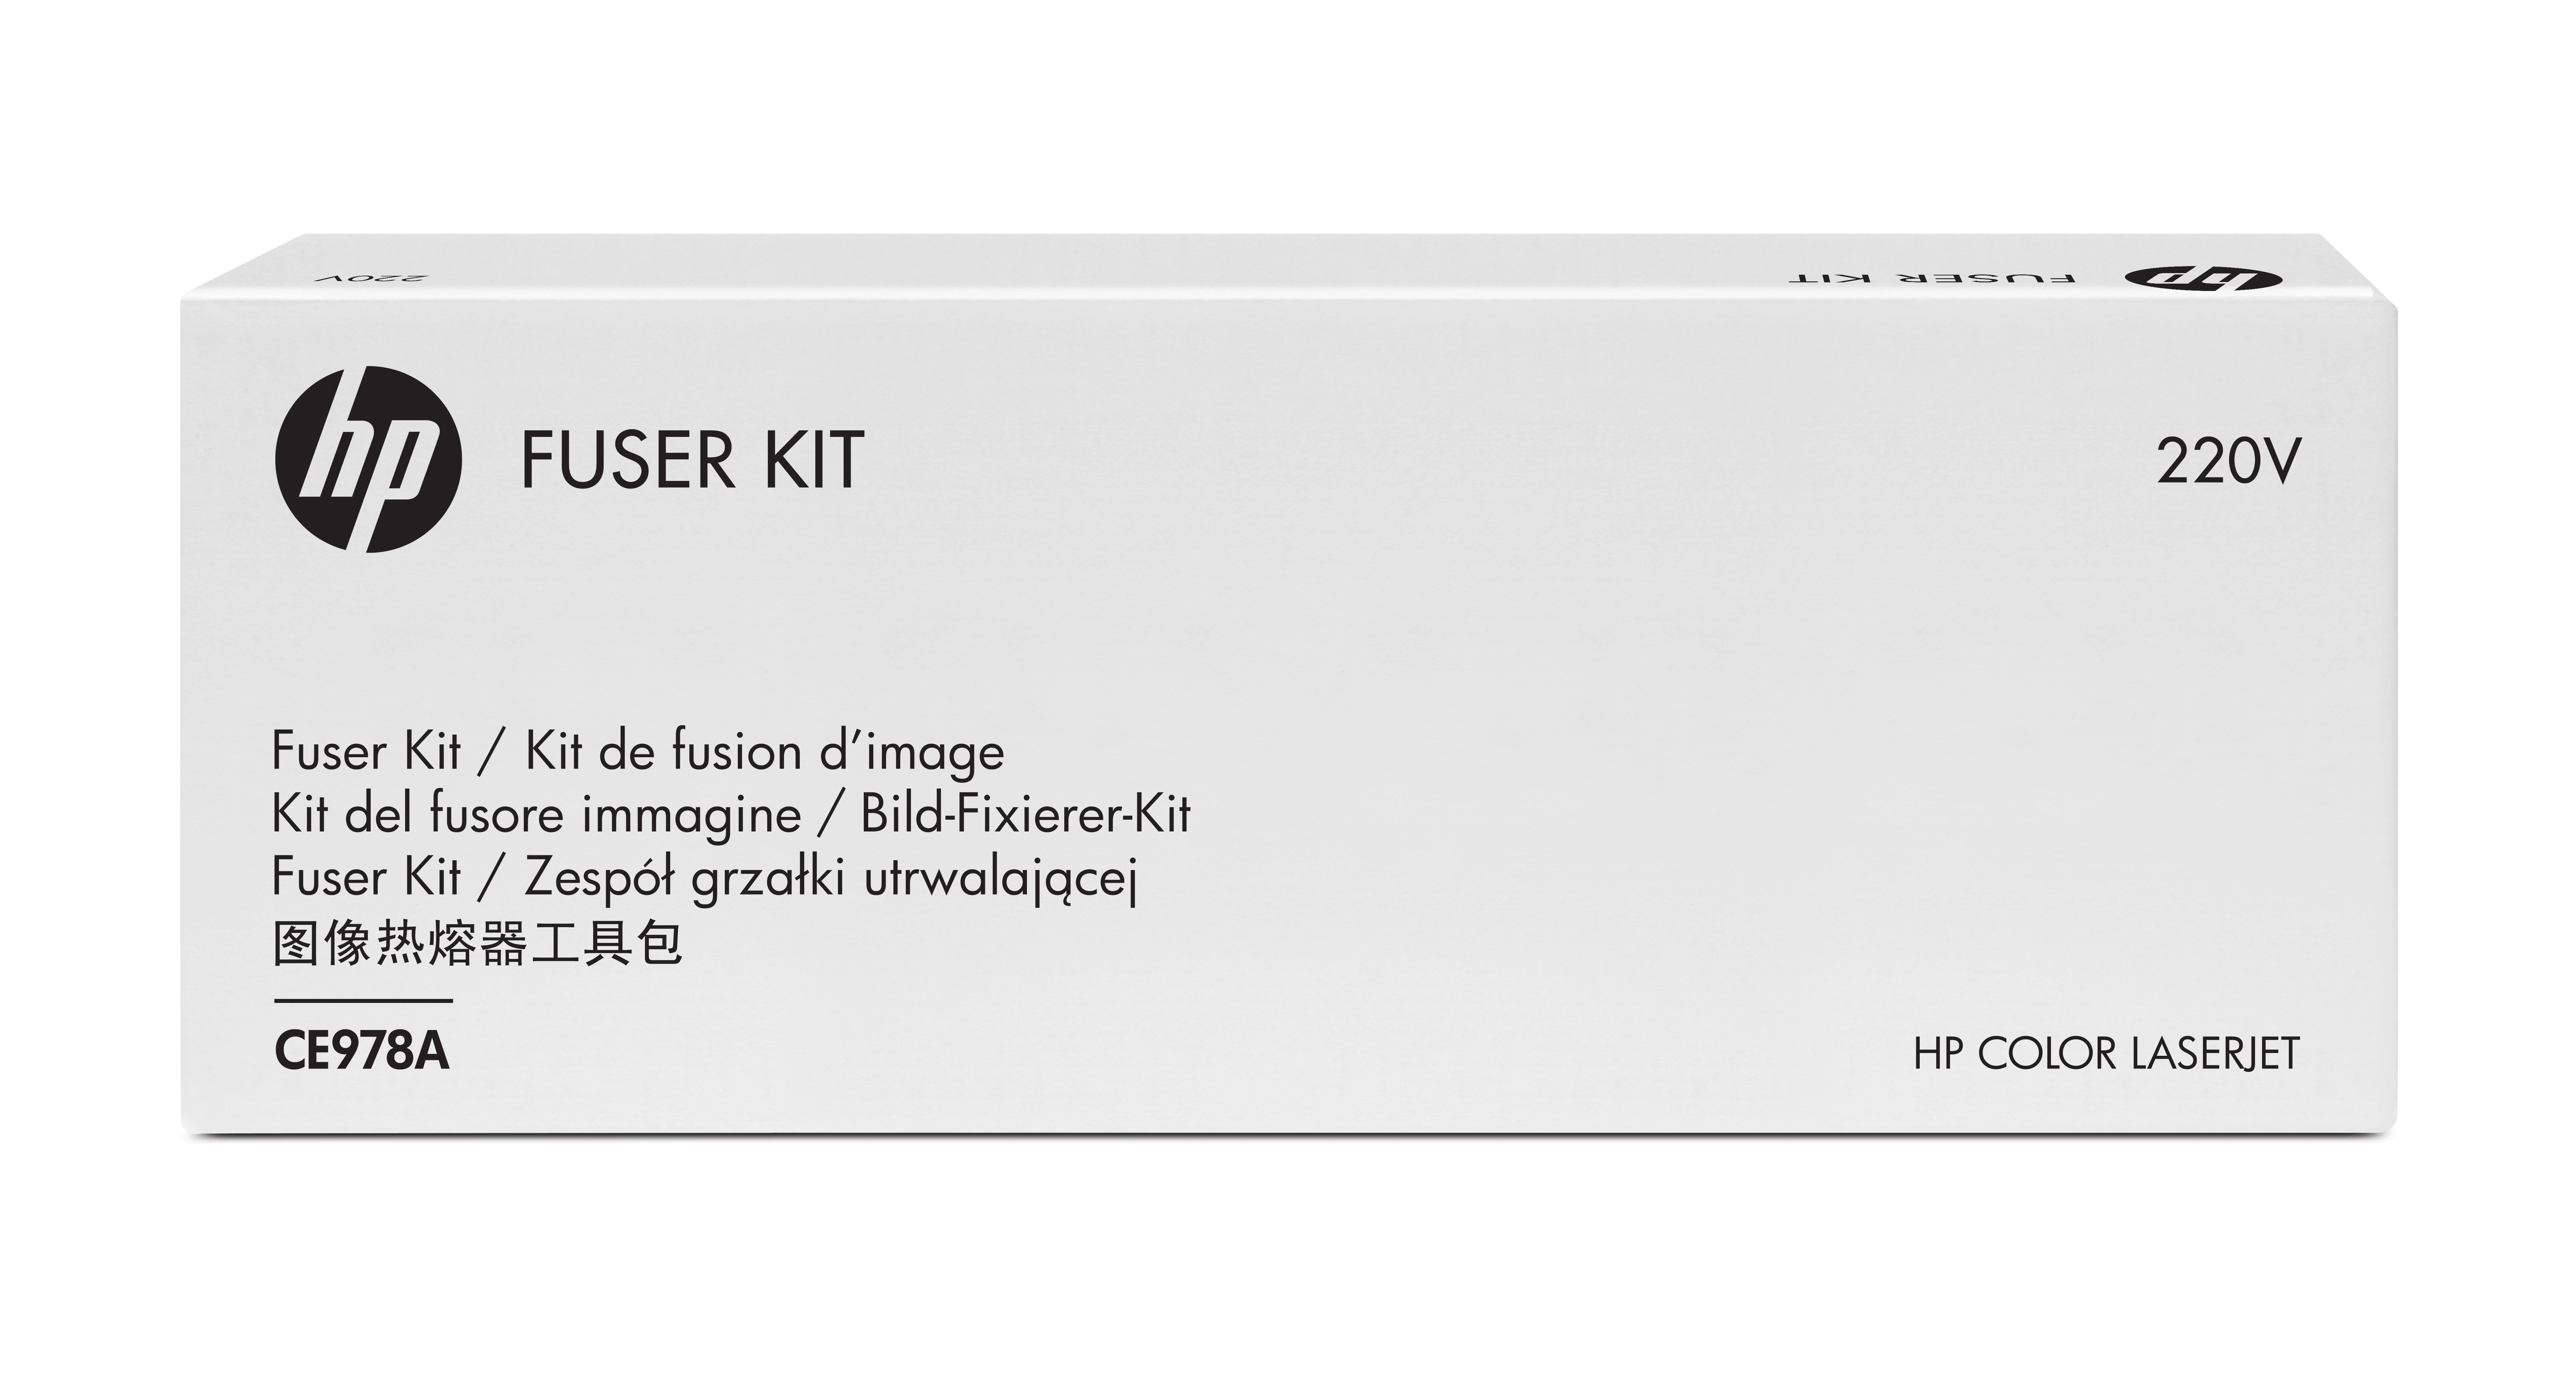 HP Color LaserJet 220V Fuser Kit fuser